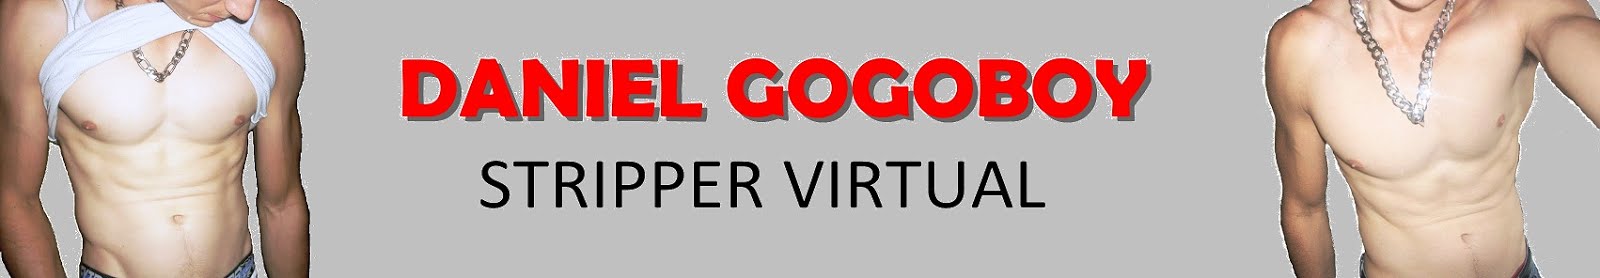 GogoBoy Daniel Stripper Virtual